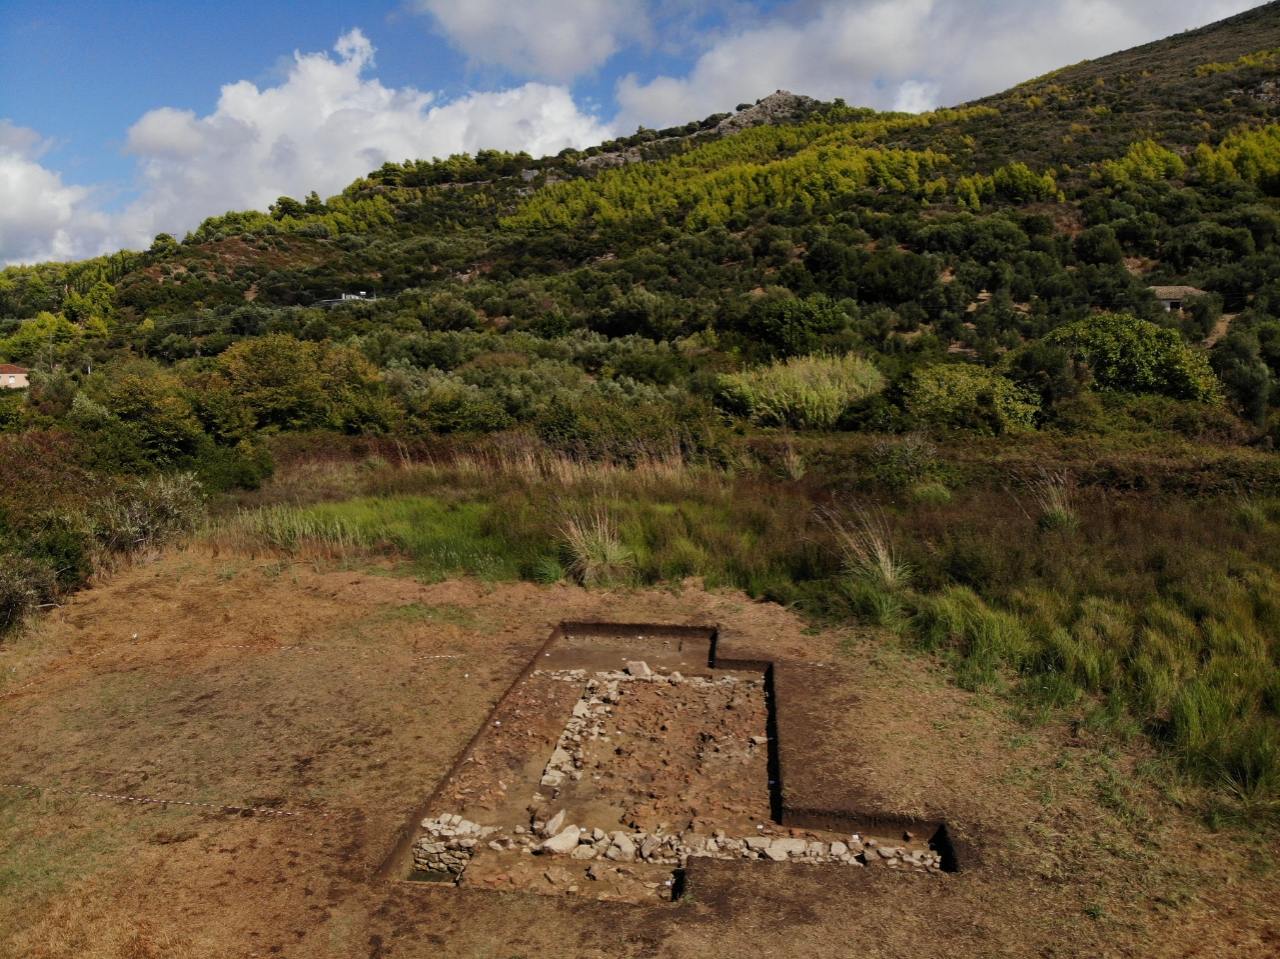 ગ્રીસ 3 માં સમિકોન નજીક ક્લેઈડી સાઇટ પર સ્થિત પોસાઇડન મંદિરની શોધ